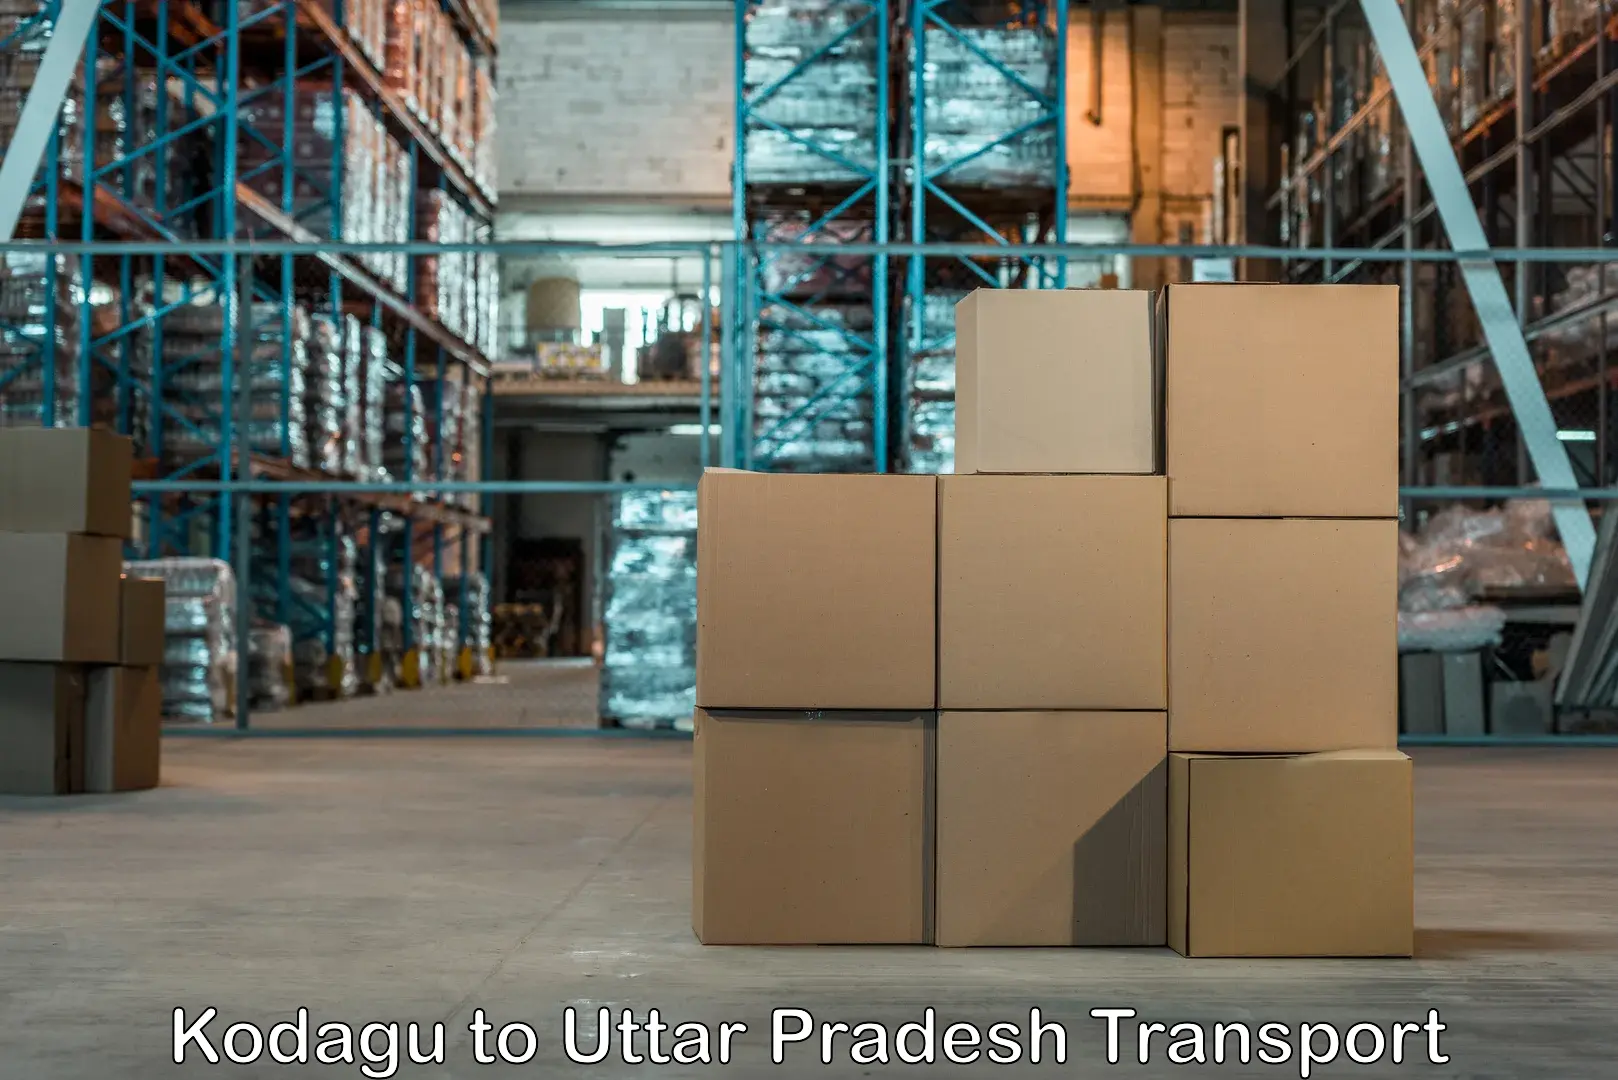 Lorry transport service Kodagu to Uttar Pradesh